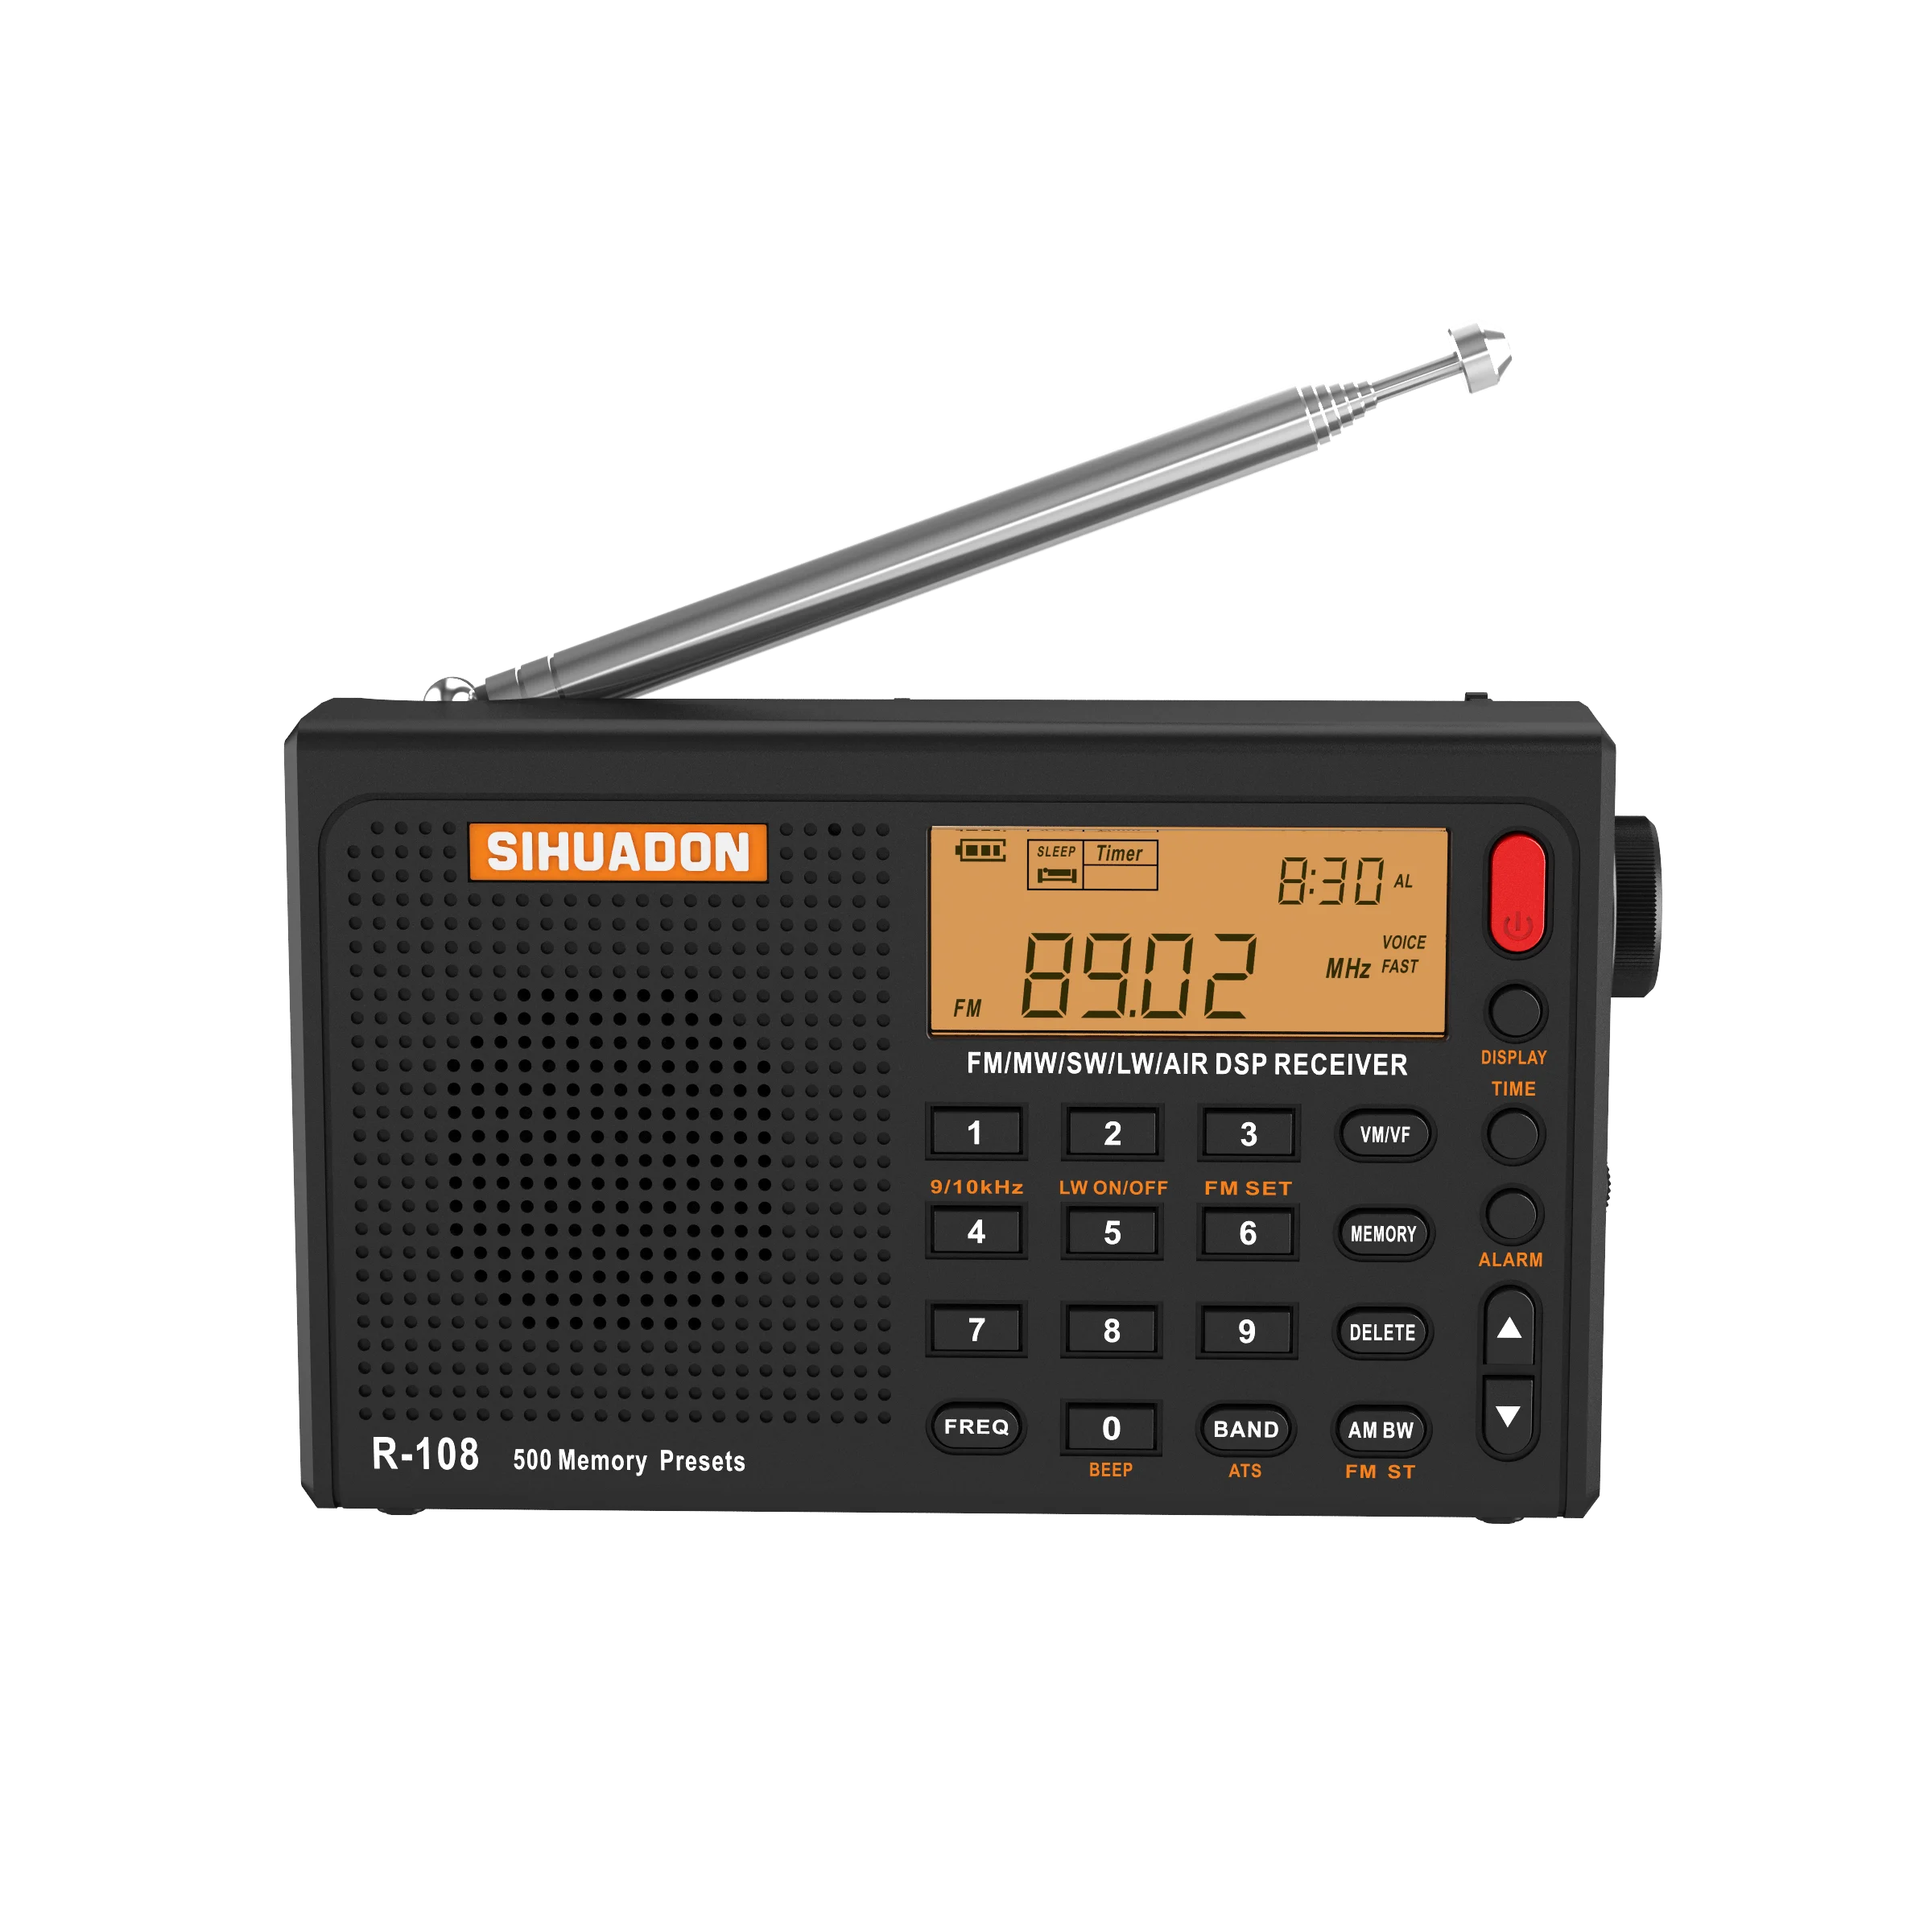 Sihuadon-ポータブルデジタルラジオシステム,R-108ラジオ,FMレシーバー,アラーム,機能ディスプレイ,温度スピーカー